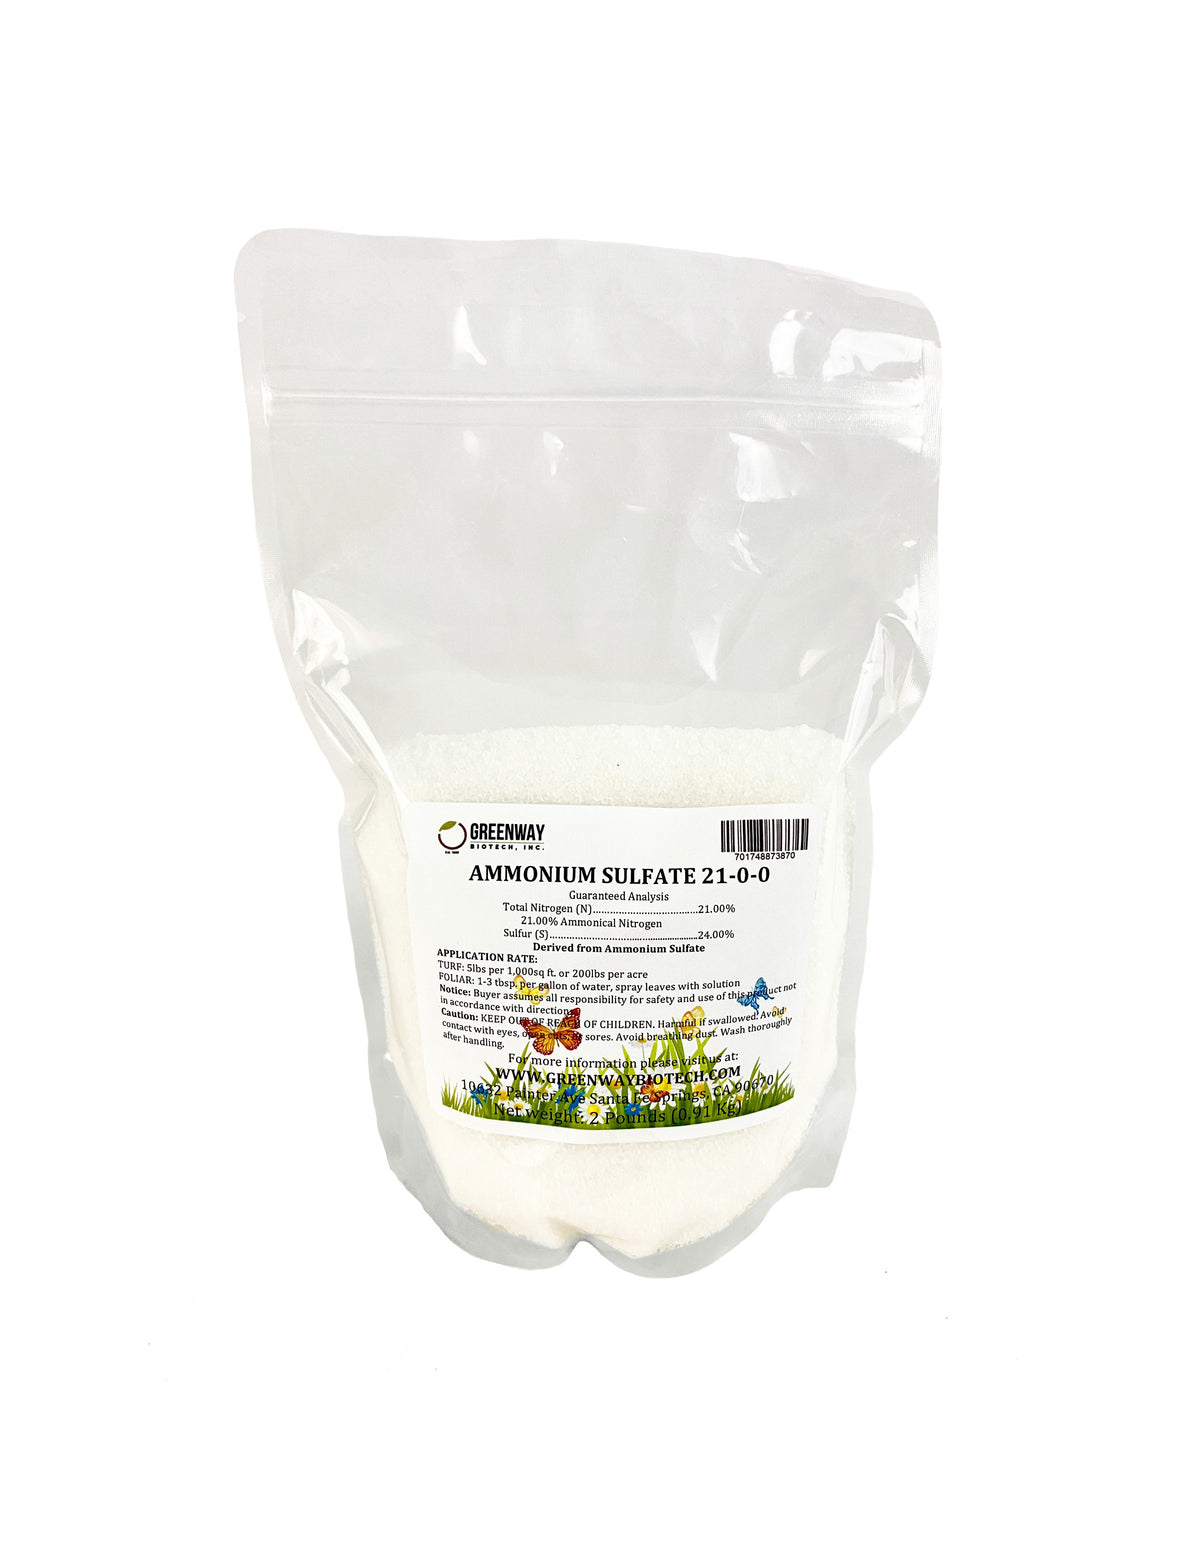 Ammonium Sulfate Fertilizer 21-0-0